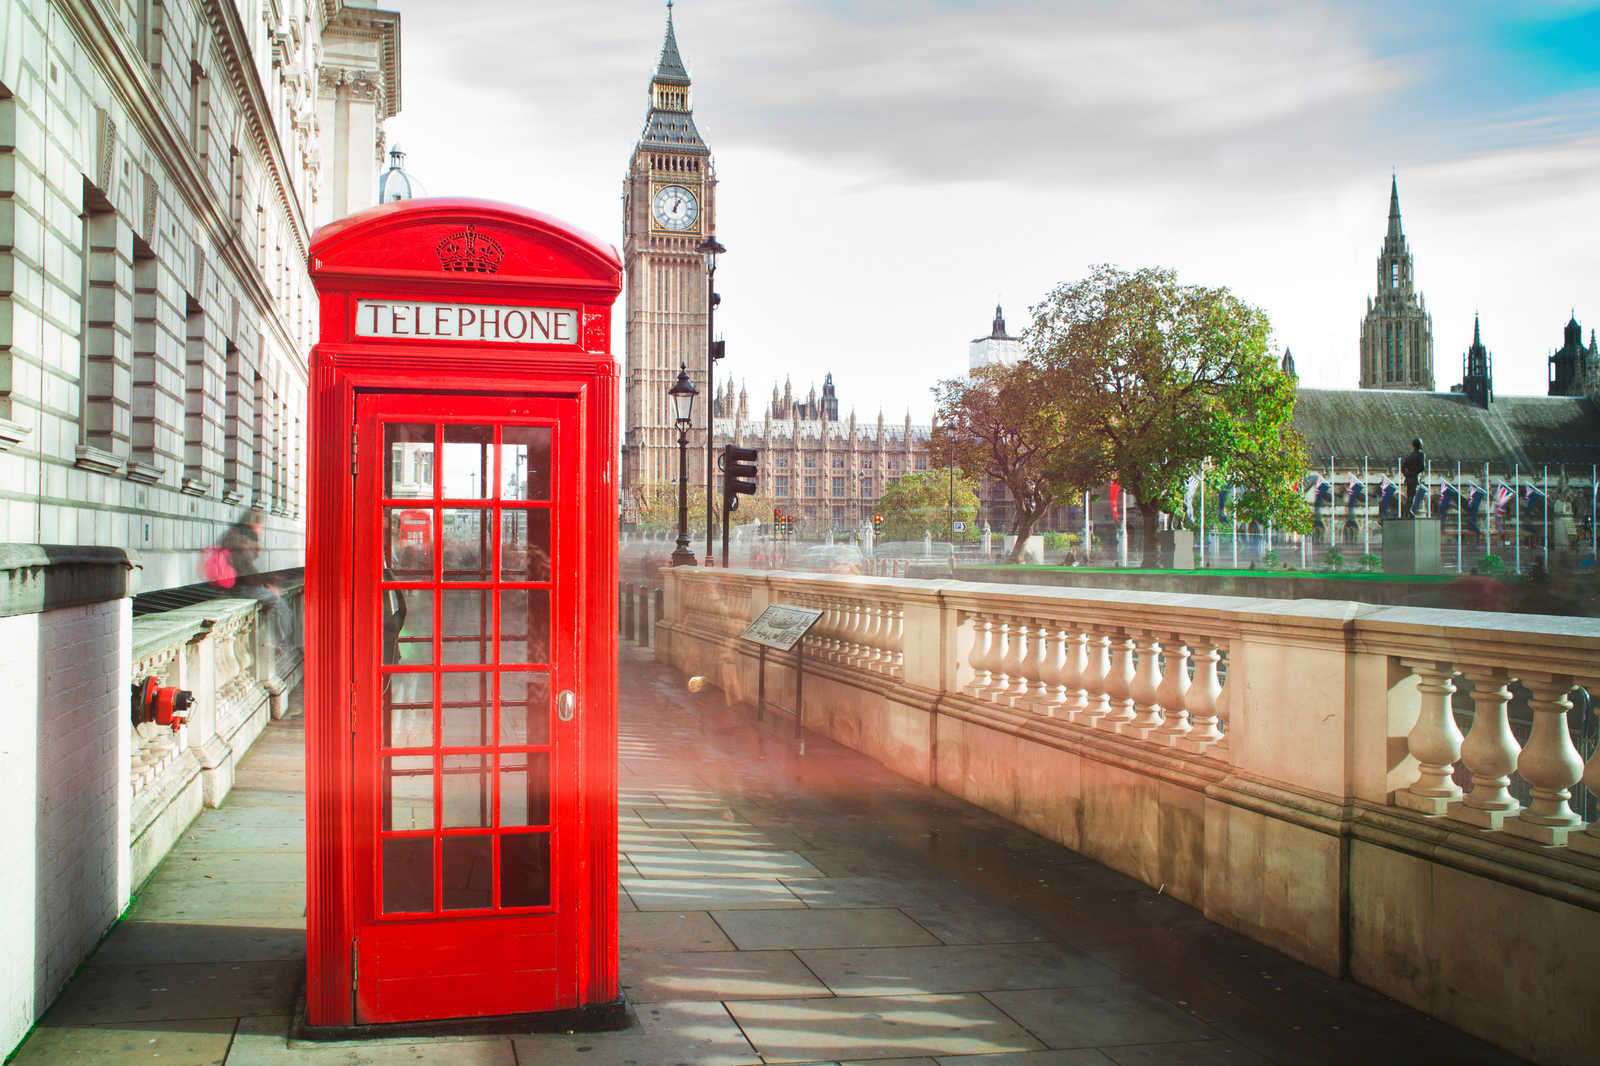             Toile avec cabine téléphonique rouge à Londres - 0,90 m x 0,60 m
        